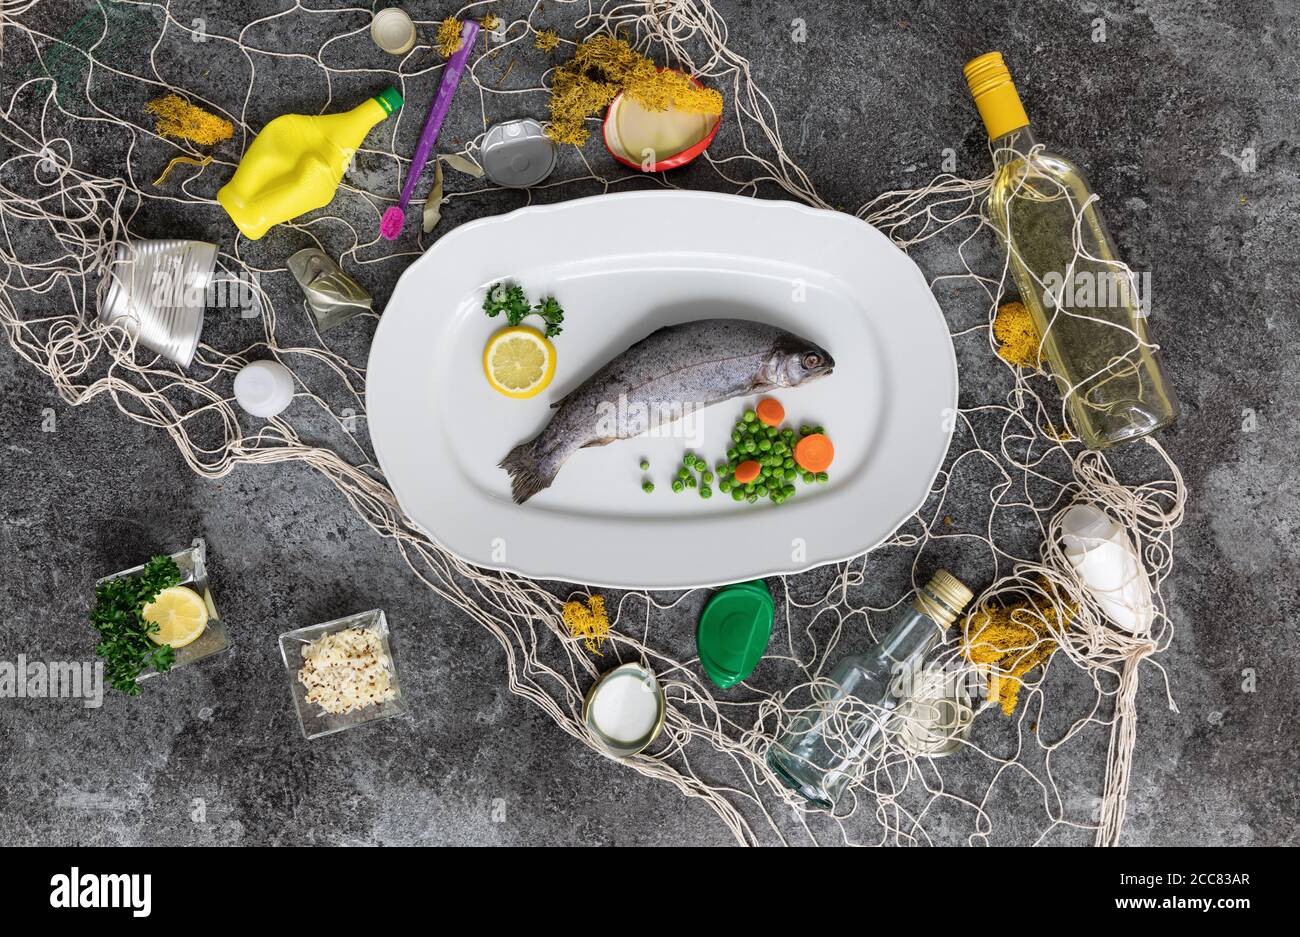 assiette de poisson blanche avec truite arc-en-ciel, pois, carottes, citrons et divers déchets dans le filet de pêche sur une table en marbre gris Banque D'Images